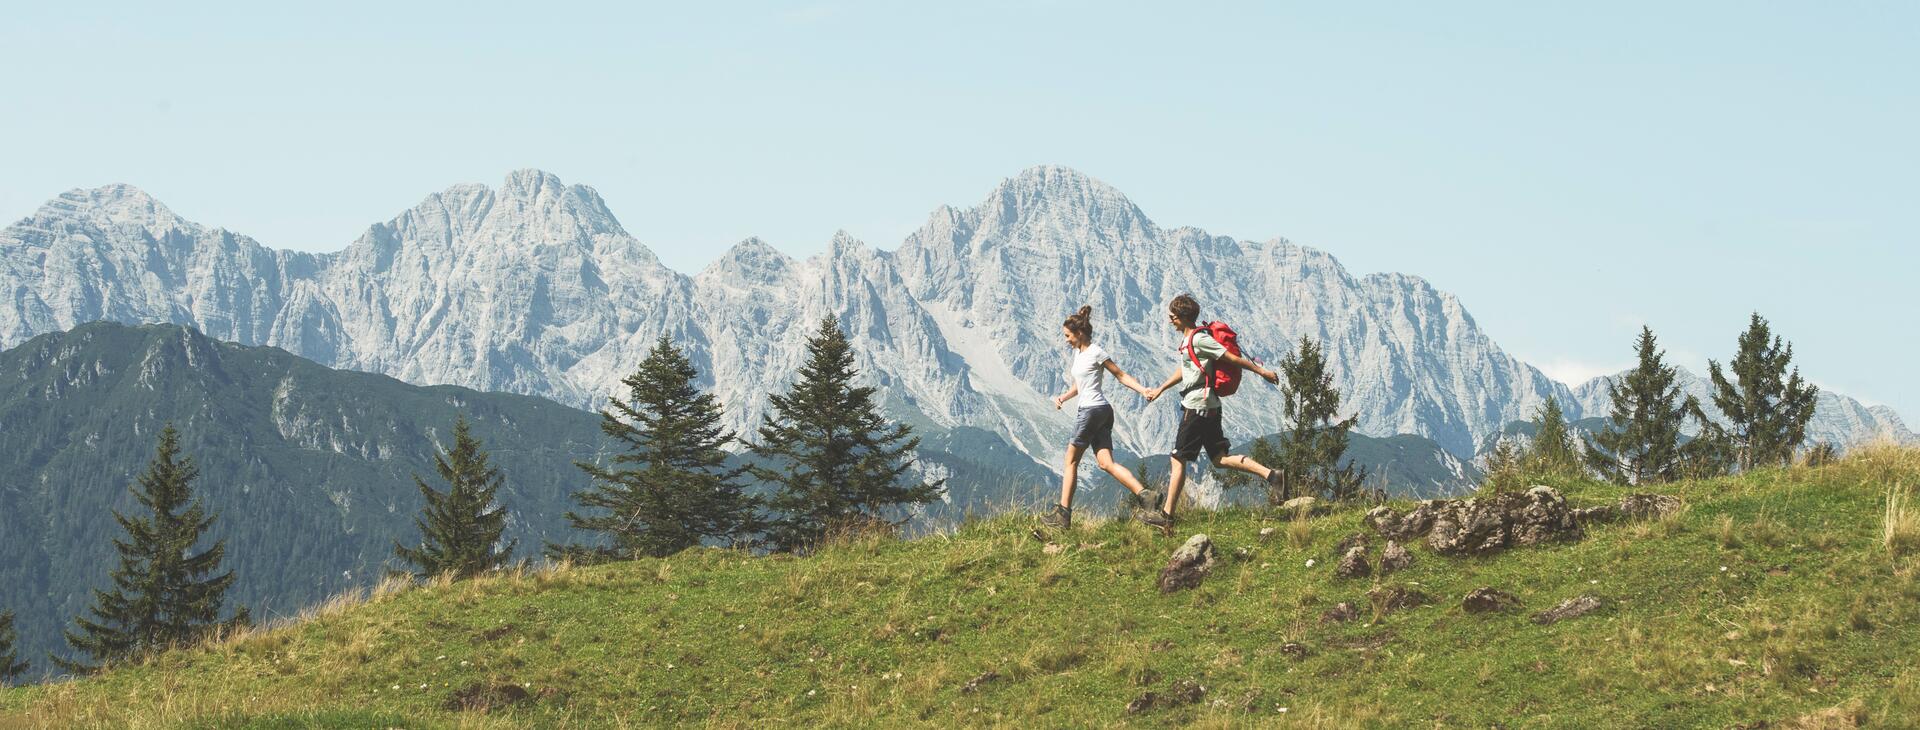 hiking holiday couples Salzburger Land